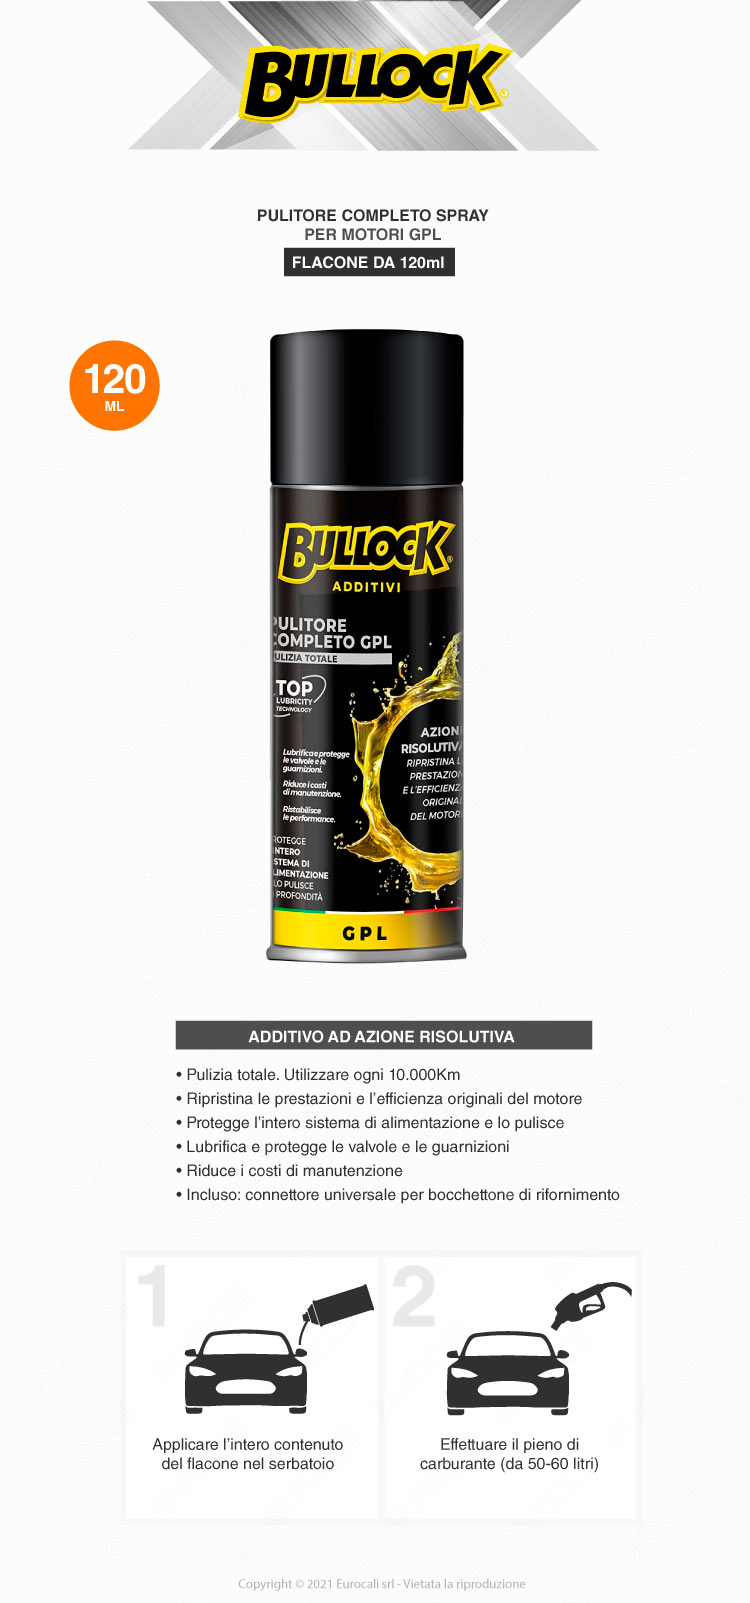 bullock additivi pulitore completo gpl